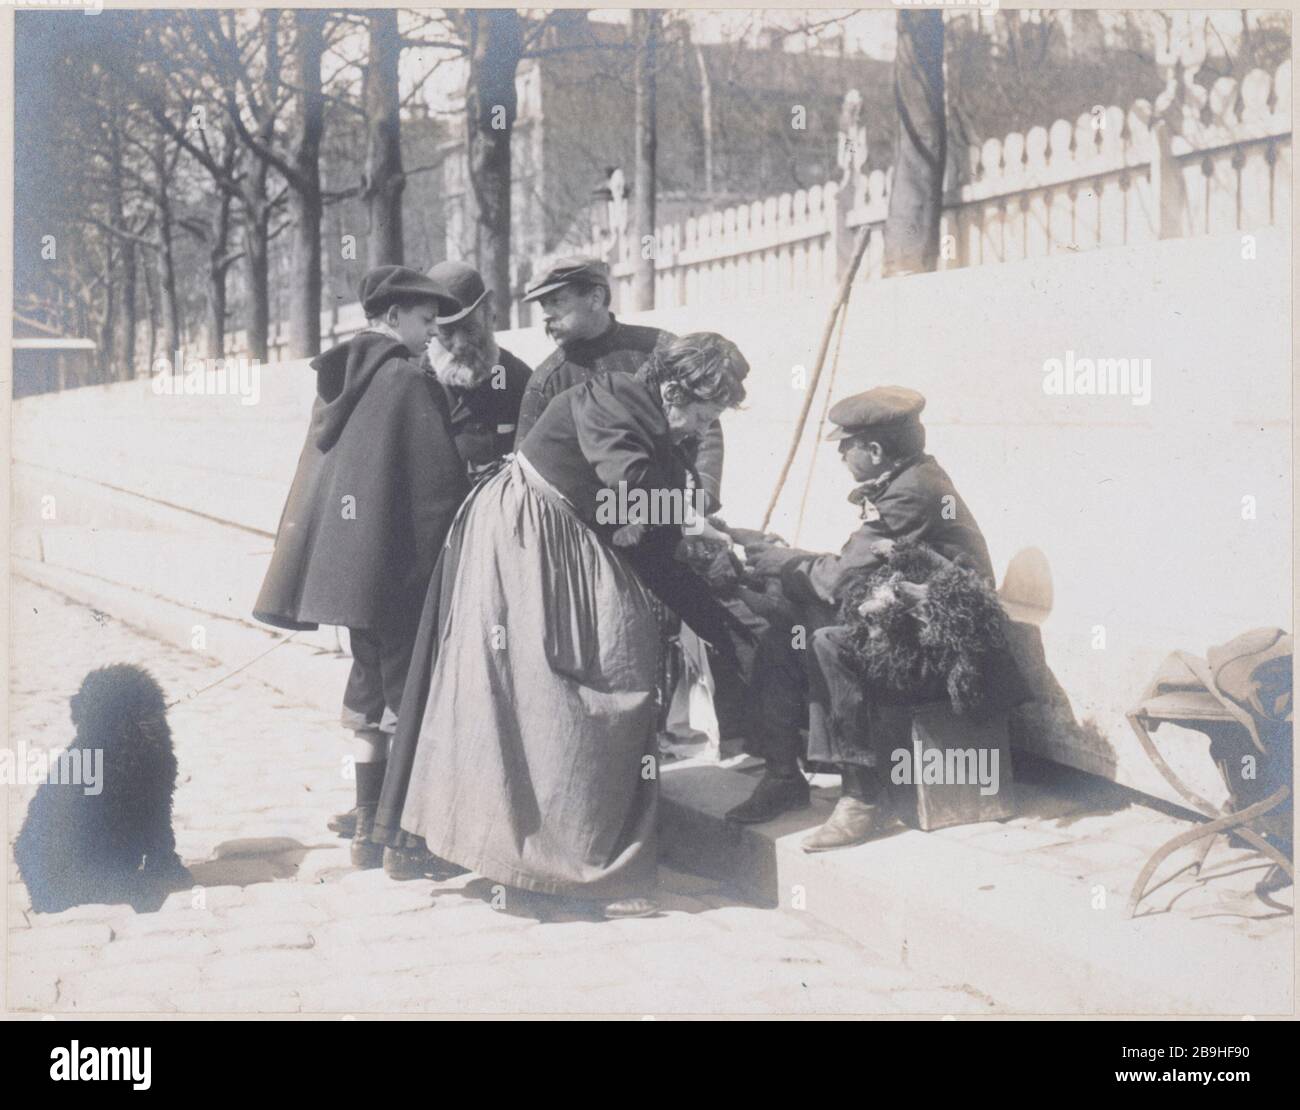 TONDEUR DOGS Tondeur de chiens, quai de la Seine. Paris, vers 1900. Photographie de Louis Vert (1885-1924). Paris, musée Carnavalet. Stock Photo